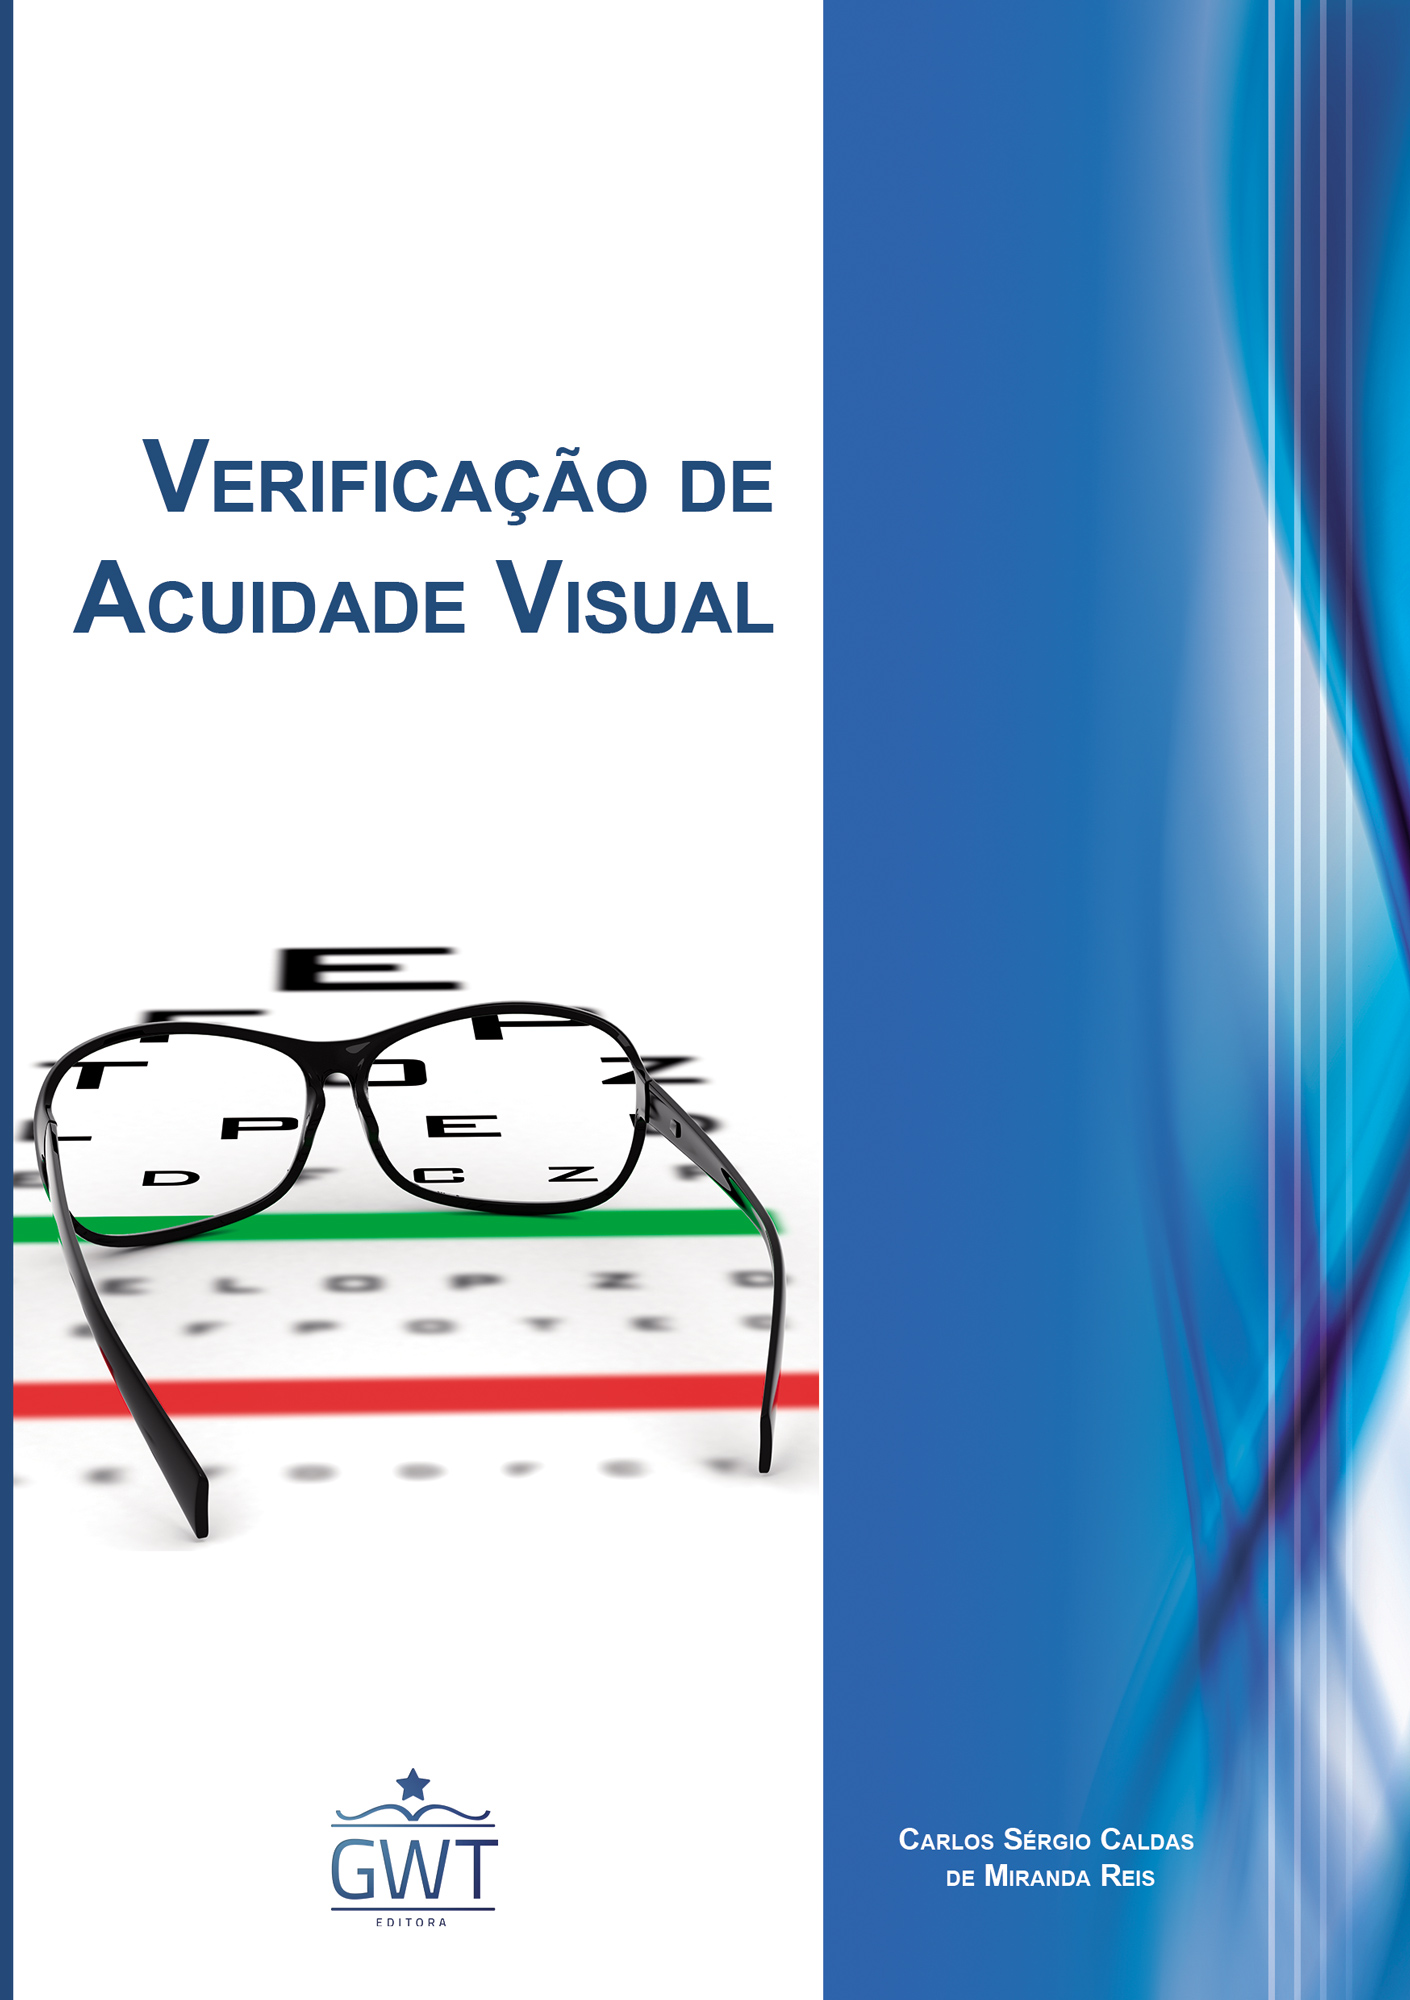 Capa-Verificação-de-Acuidade-Visual-nova-logo.jpg